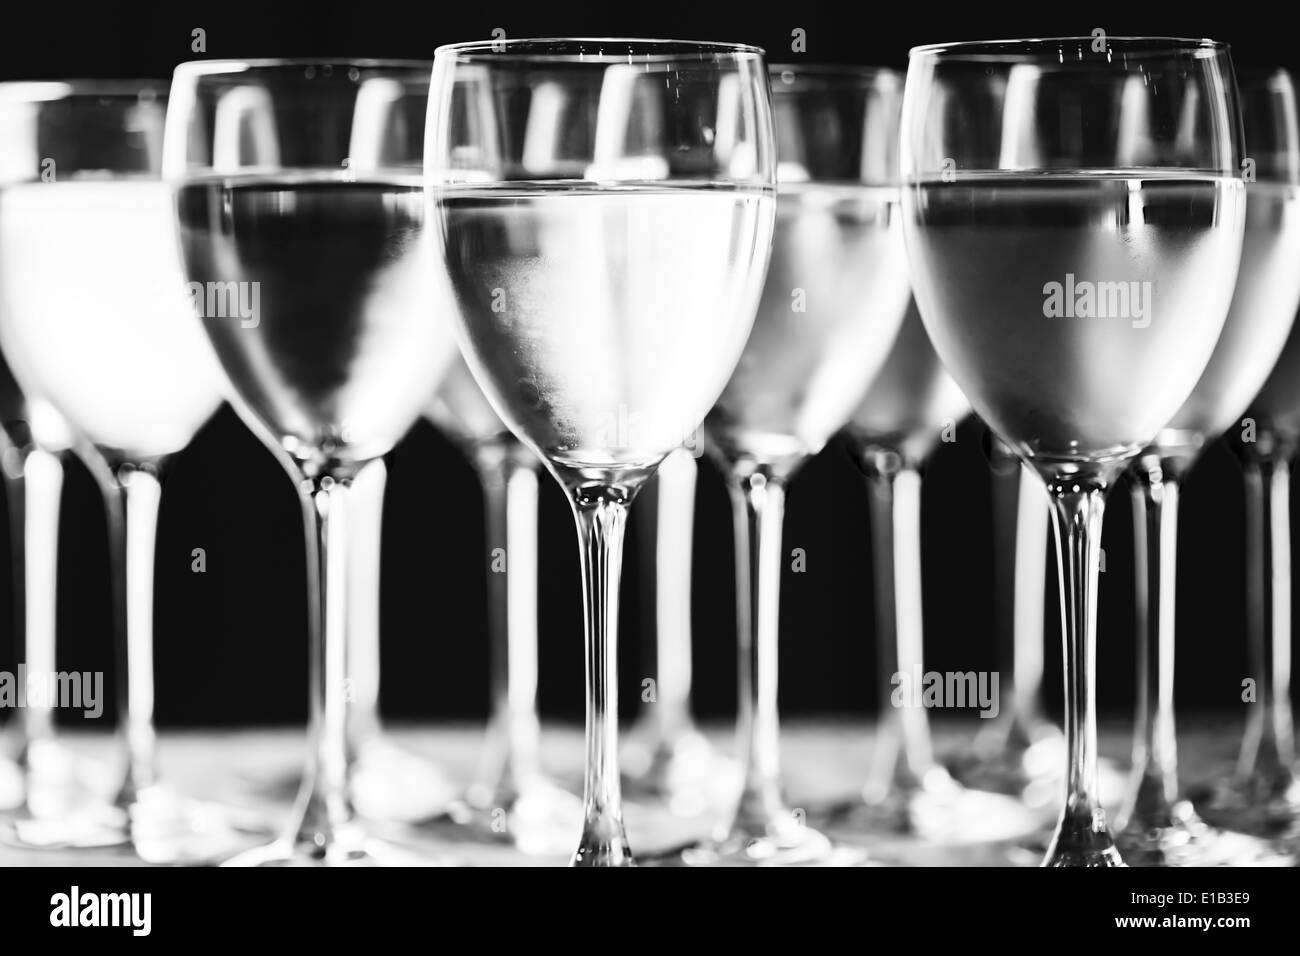 Reihe von Gläsern Wasser. Reines Trinkwasser. Schwarz / weiß Bild. Selektiven Fokus. Stockfoto